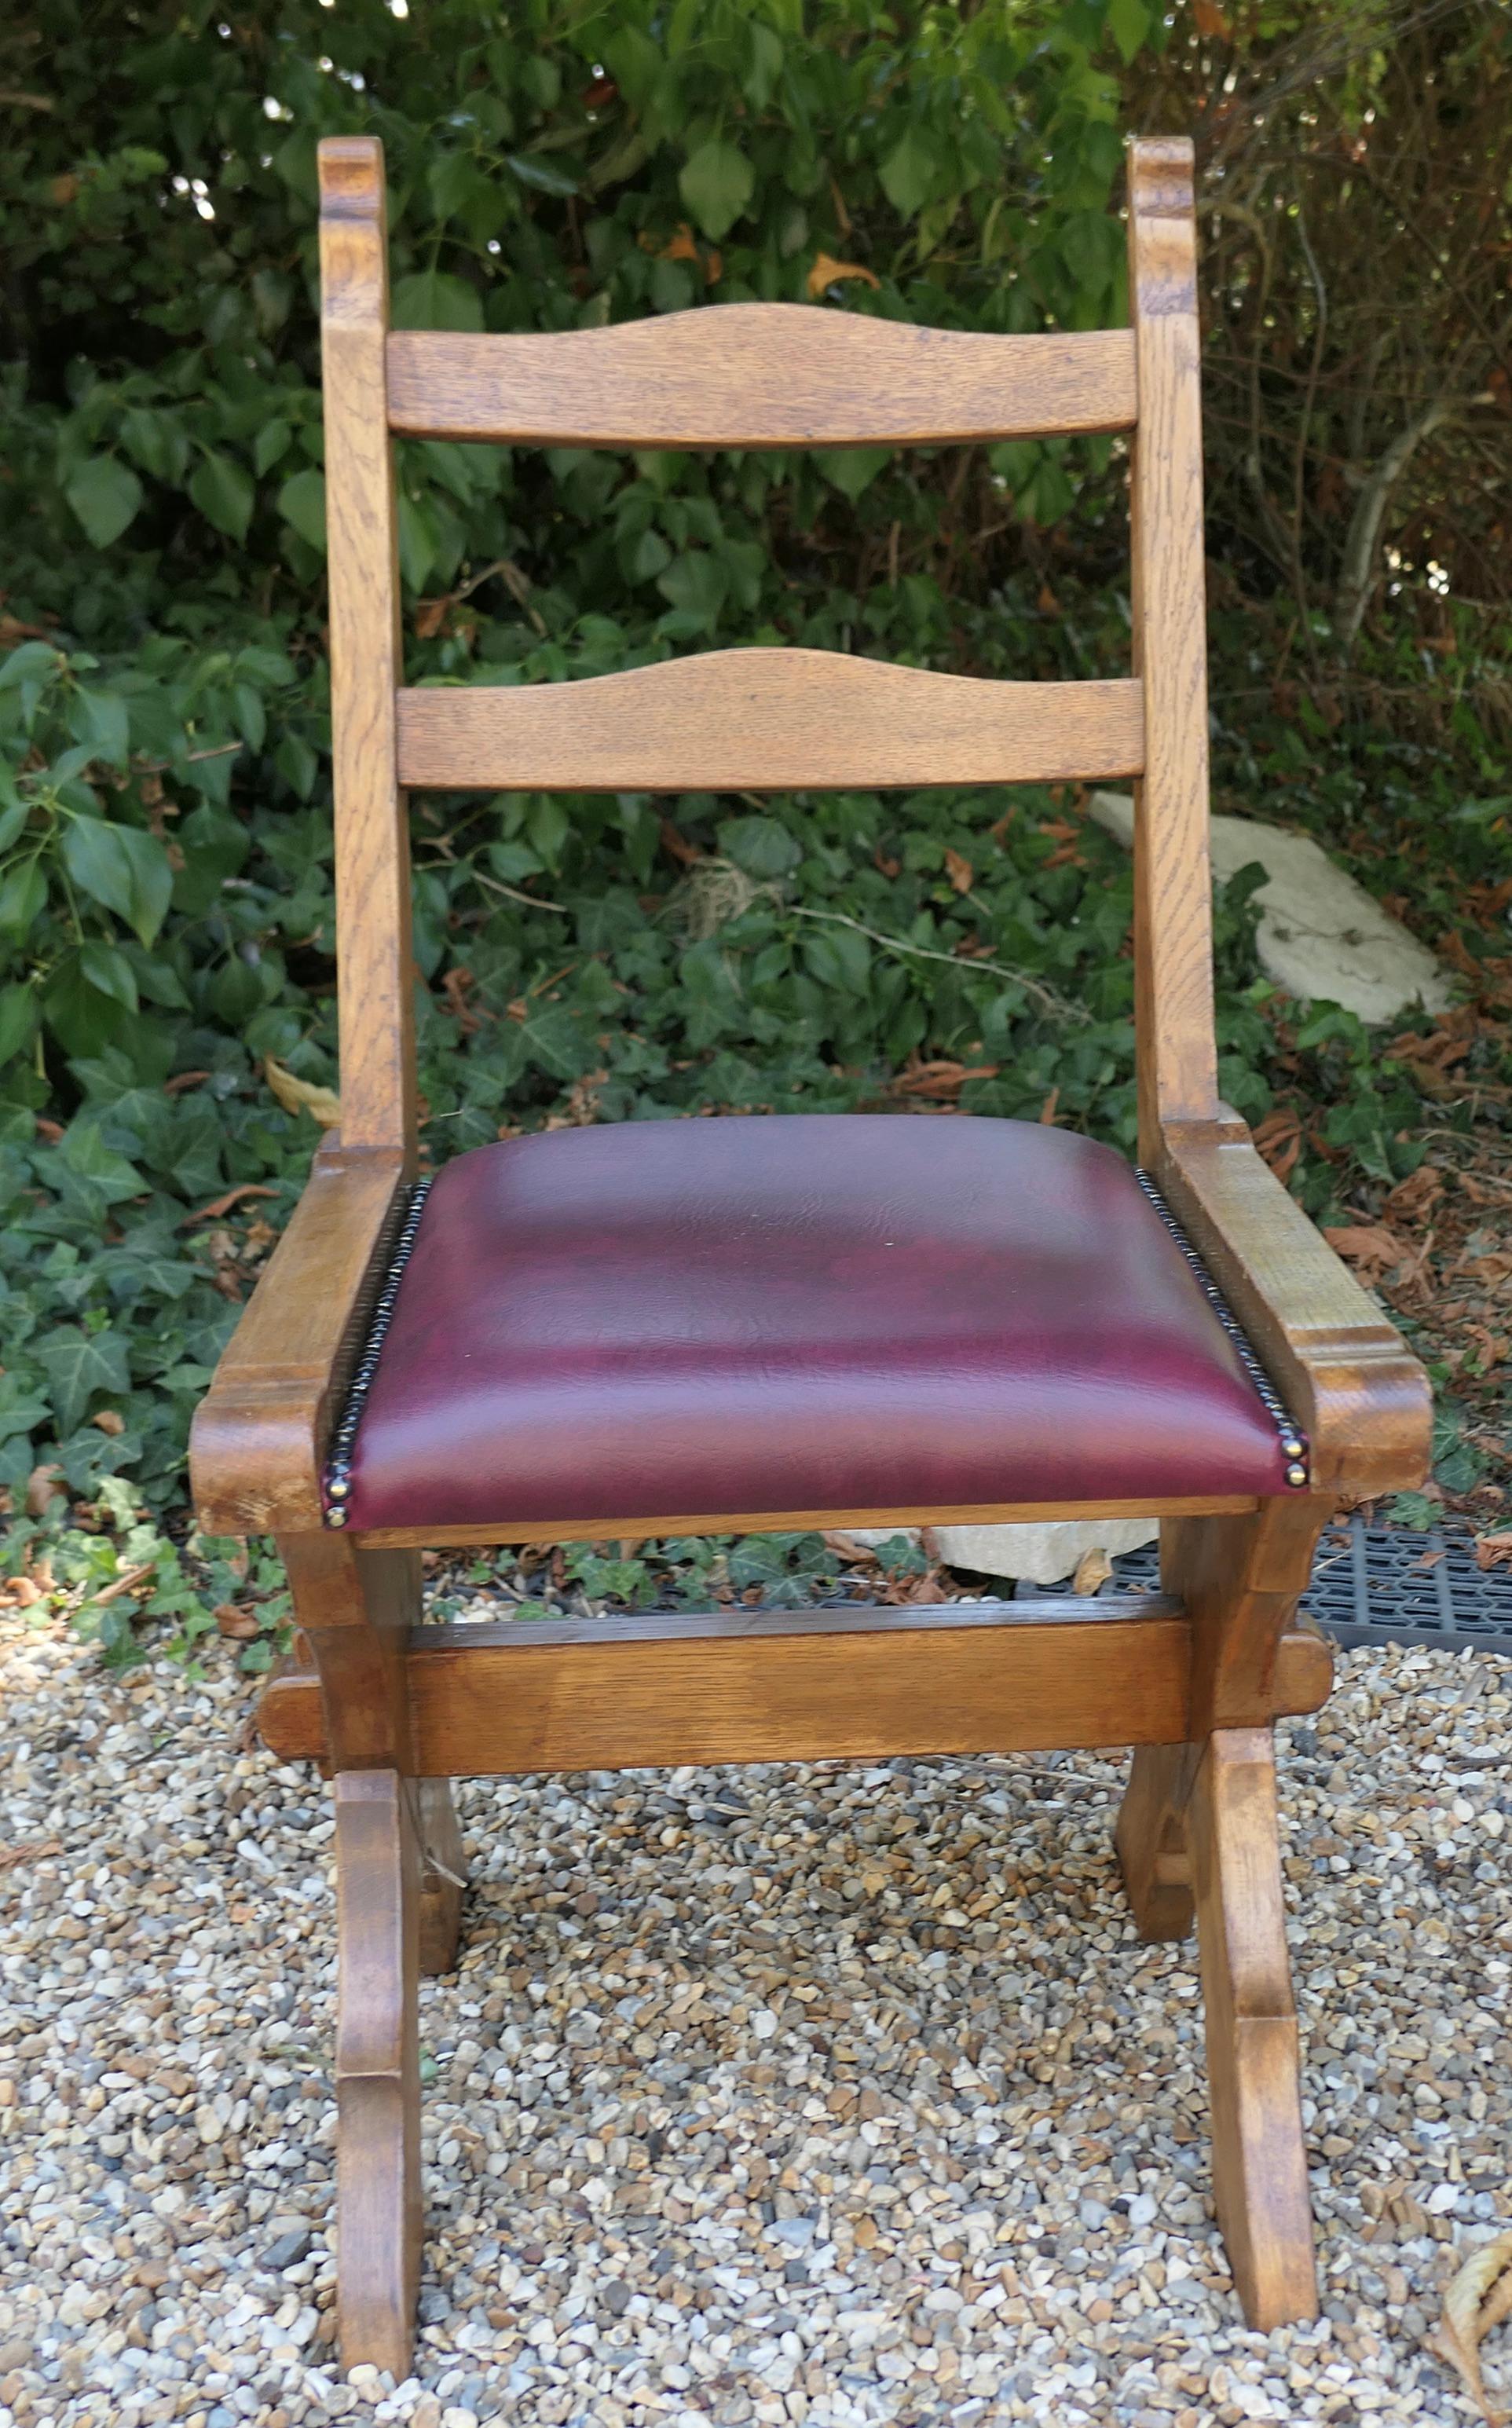 Ensemble de 4 chaises de réfectoire Arts and Crafts à cadre en chêne doré

Ces chaises en chêne très robustes reposent sur des pieds en X. Les sièges sont recouverts de simili-cuir bourgogne et de clous en laiton.
Attrayants et élégants, tous en bon